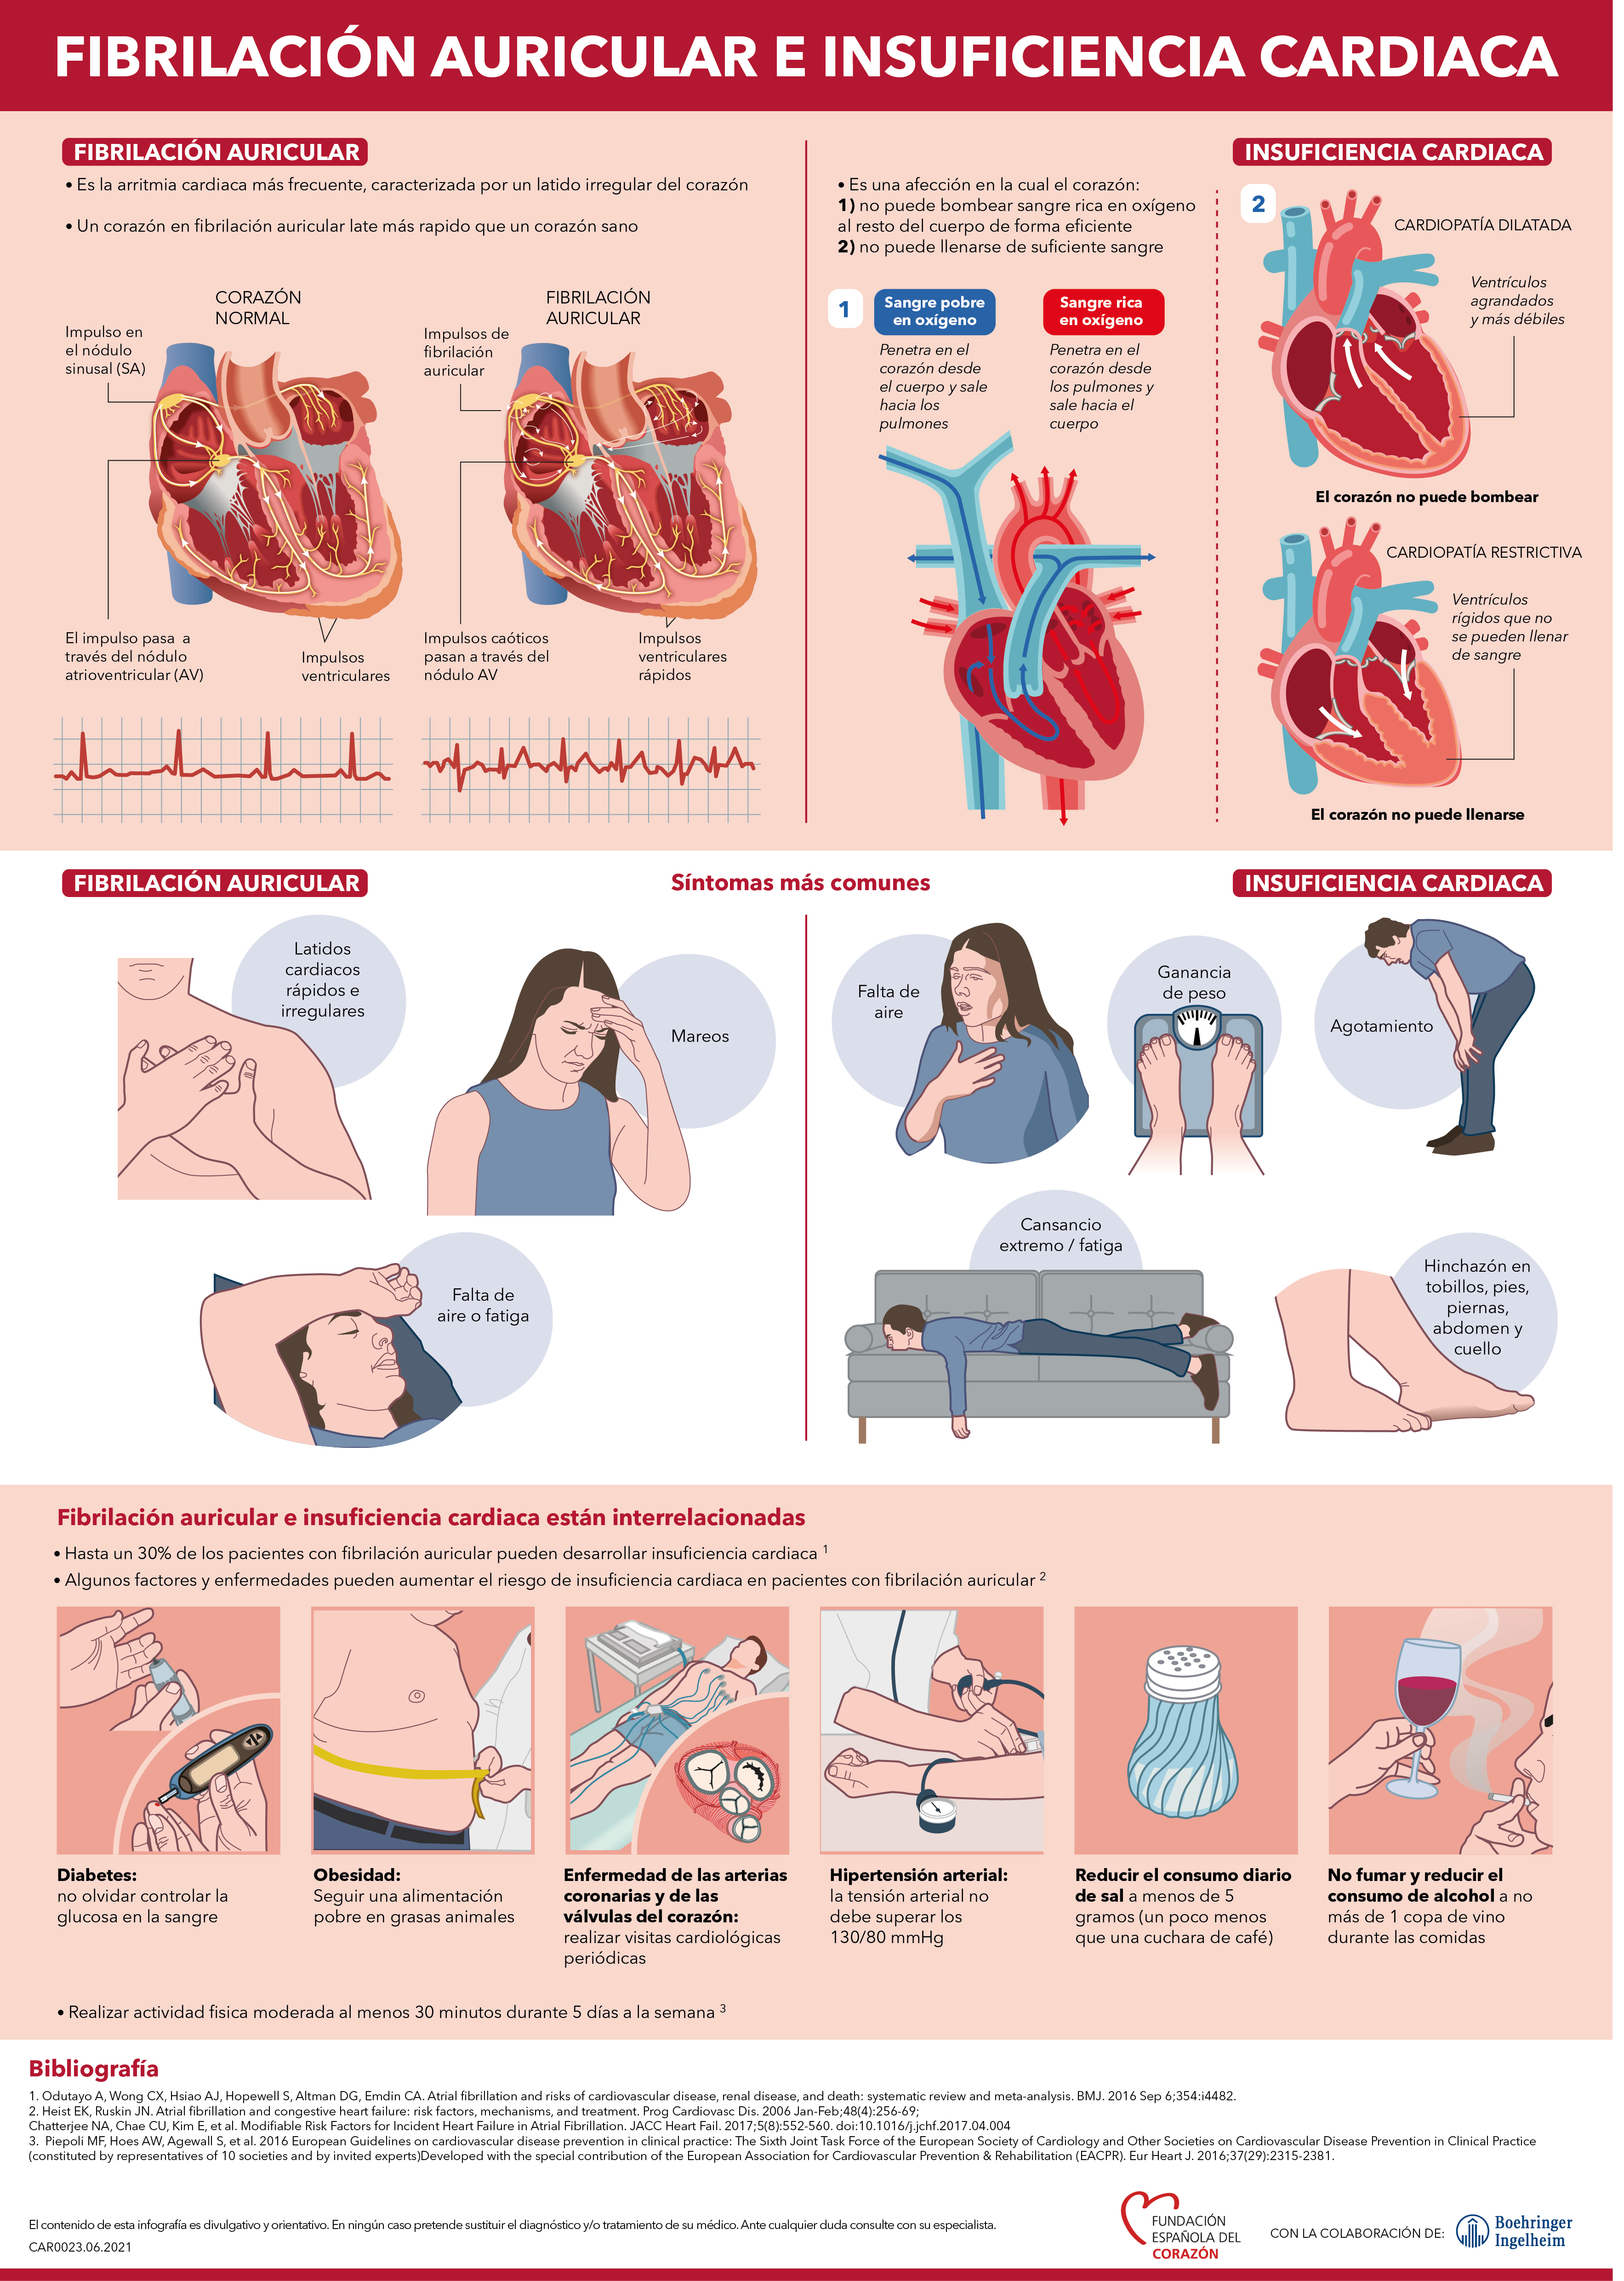 Fibrilación auricular e insuficiencia cardiaca